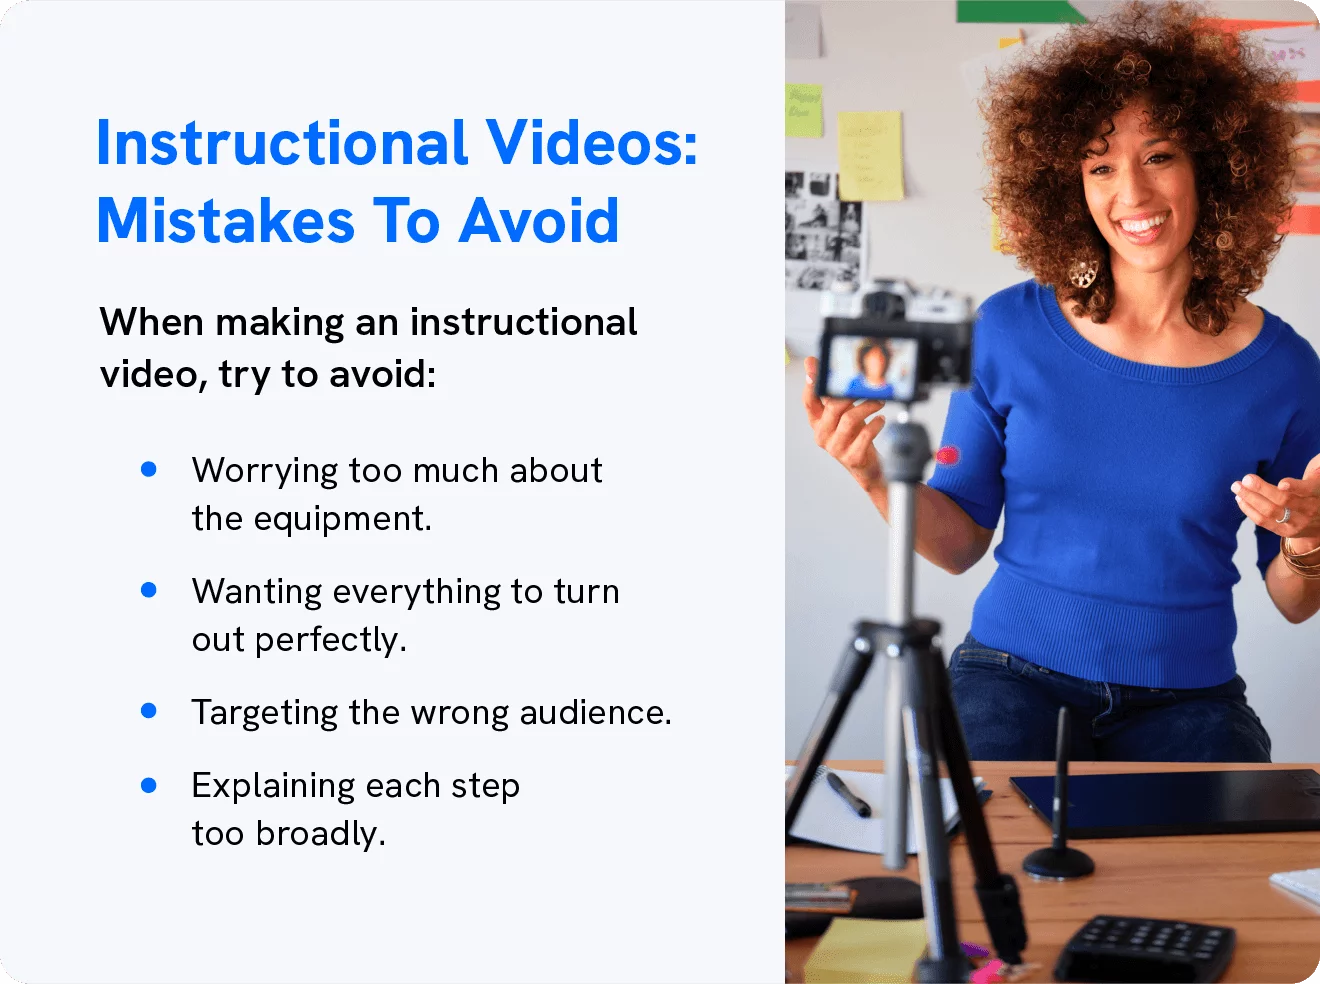 На графике показаны ошибки, которых следует избегать при создании обучающих видеороликов.